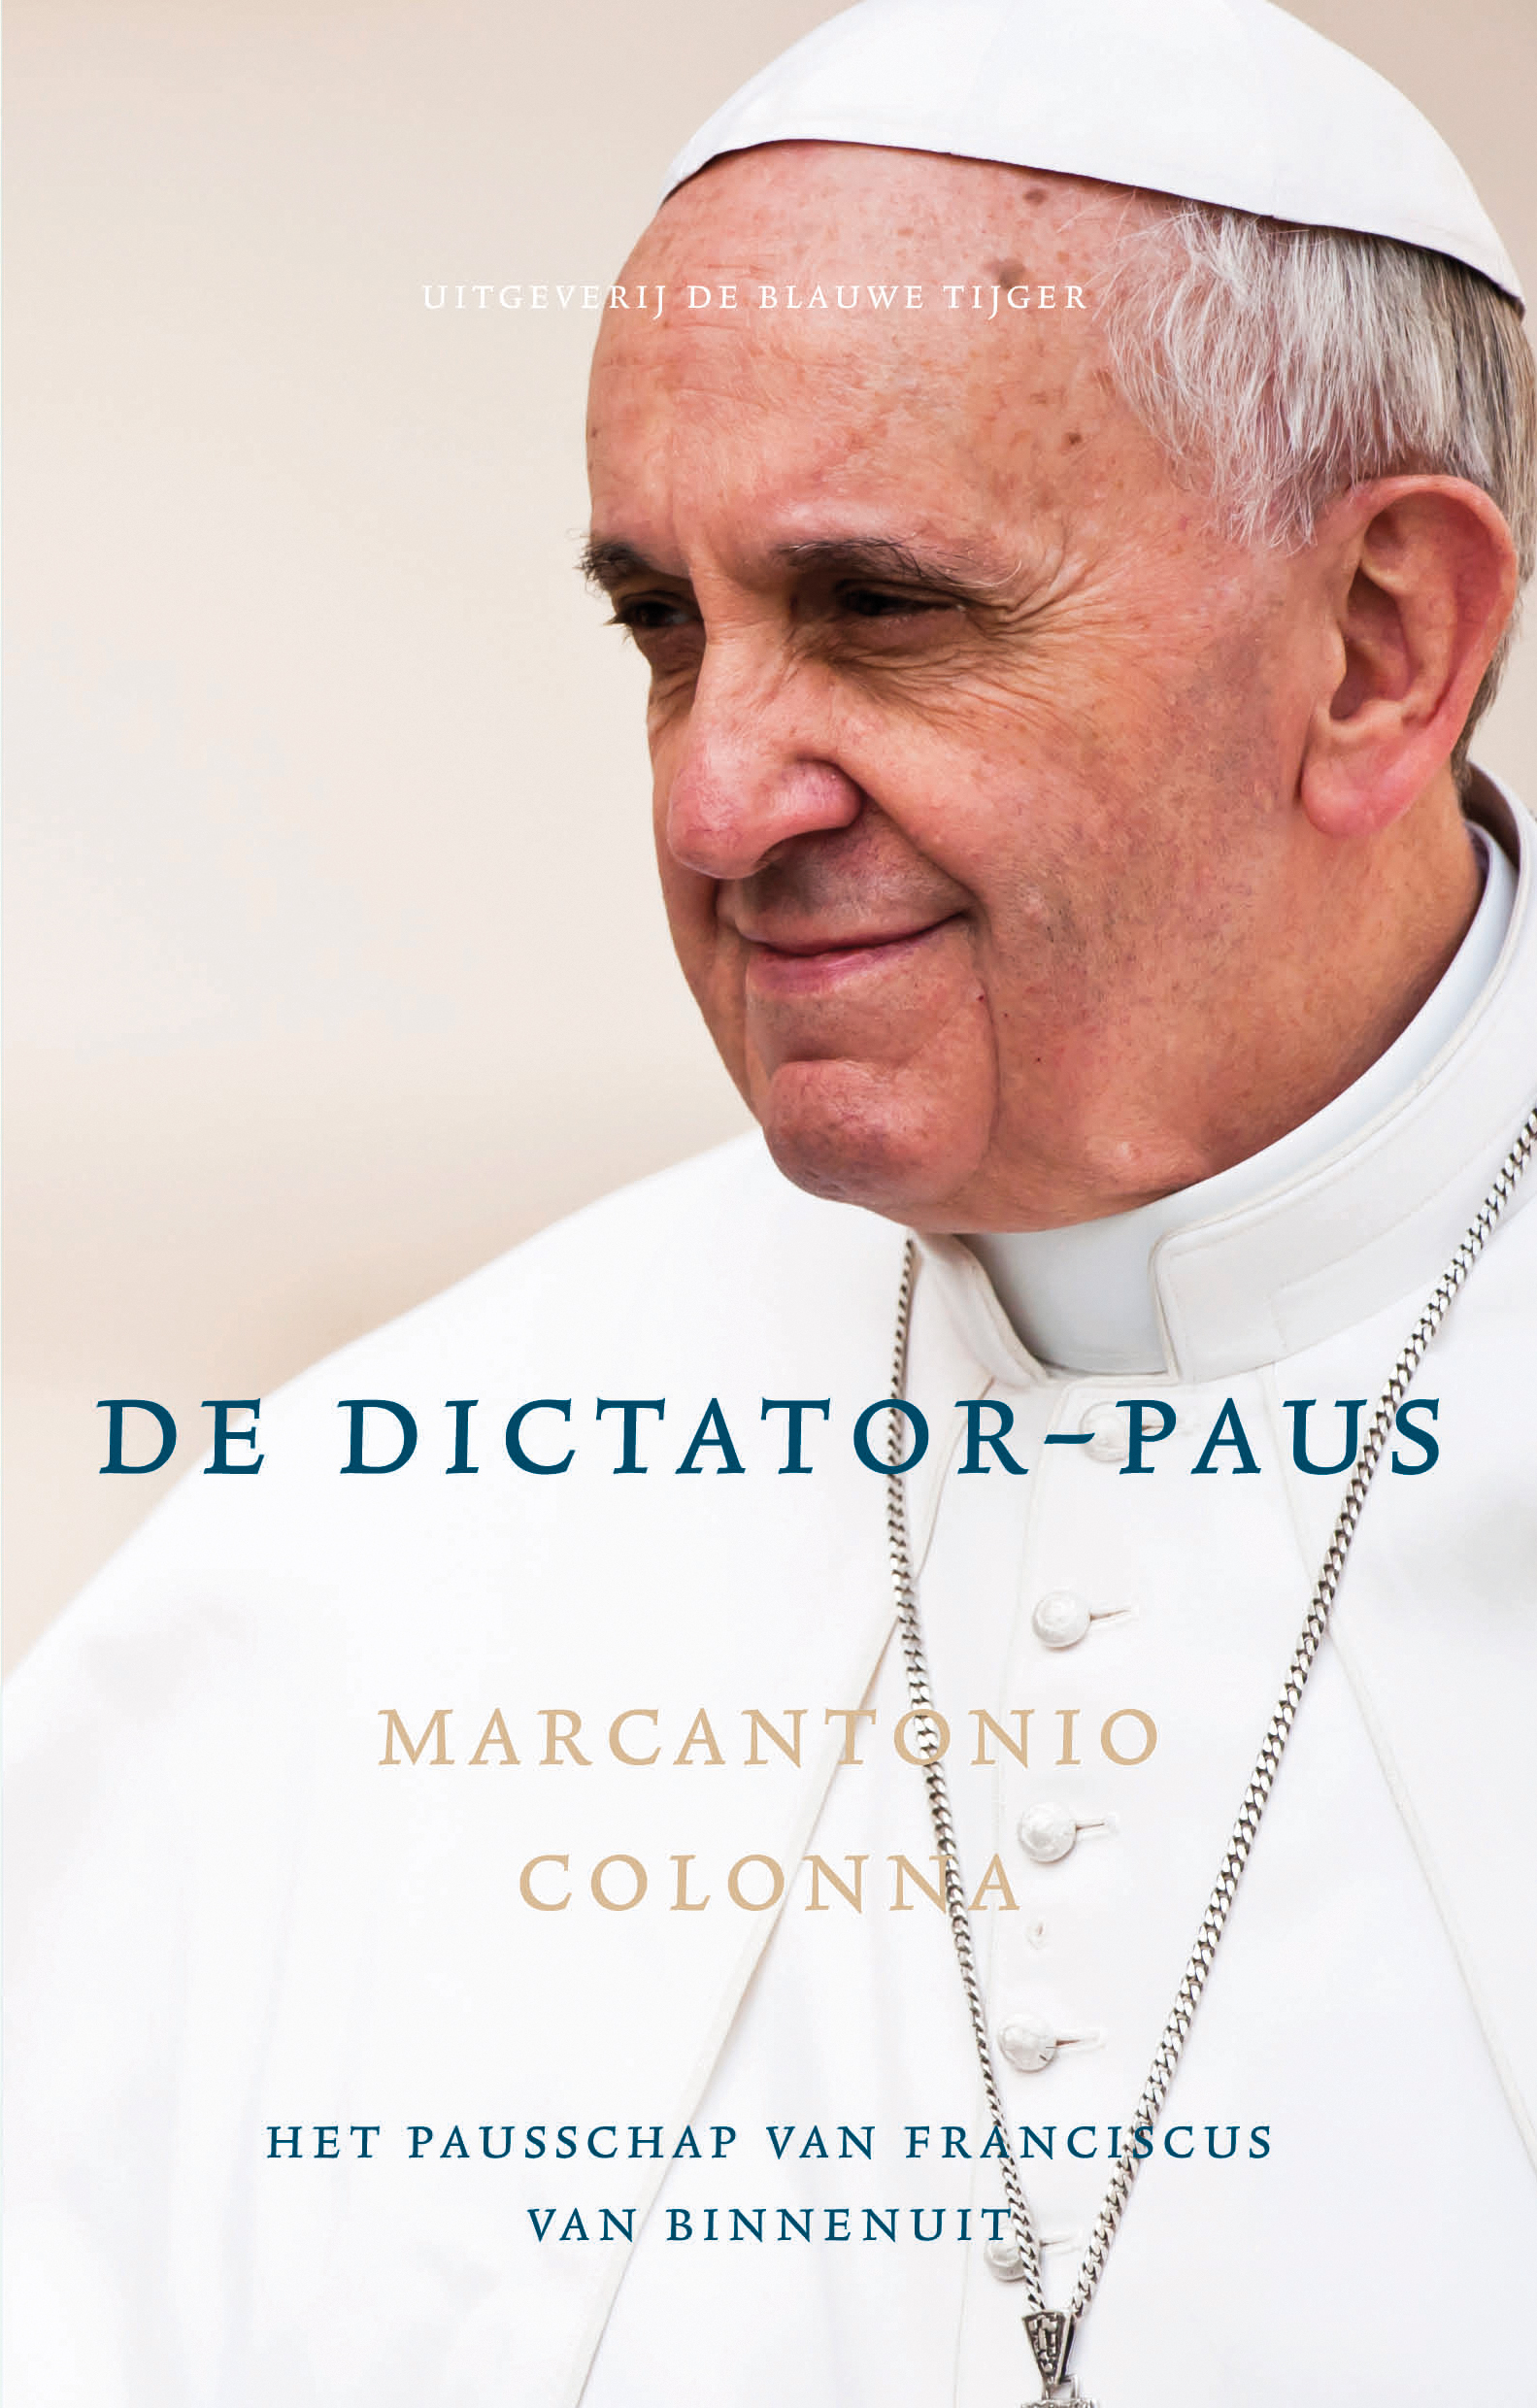 Afbeeldingsresultaat voor de dictator paus